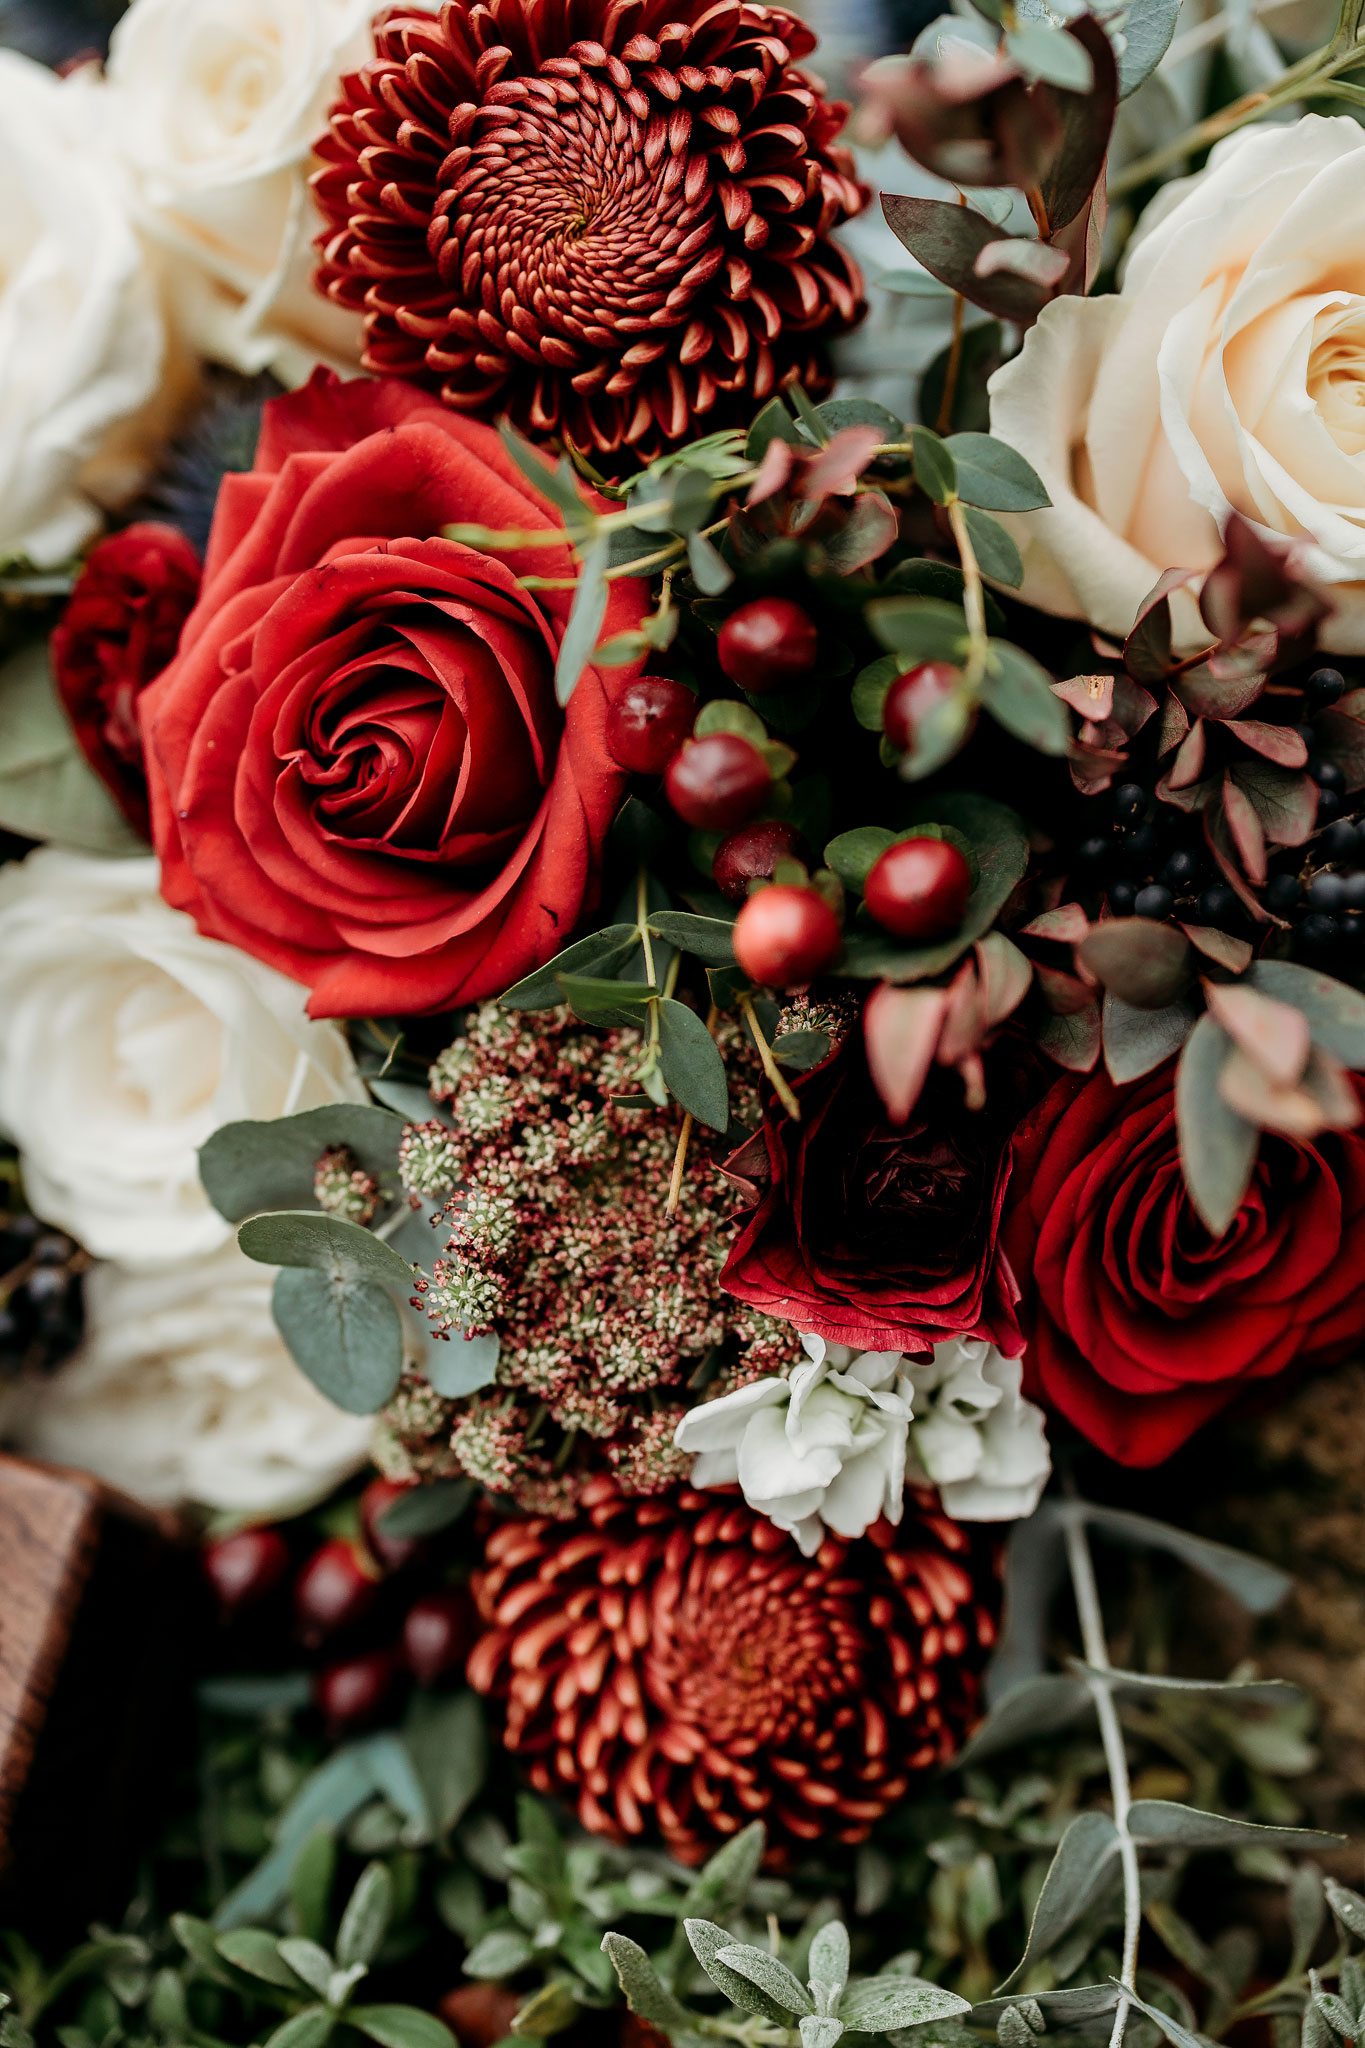 A winter wedding themed bouquet